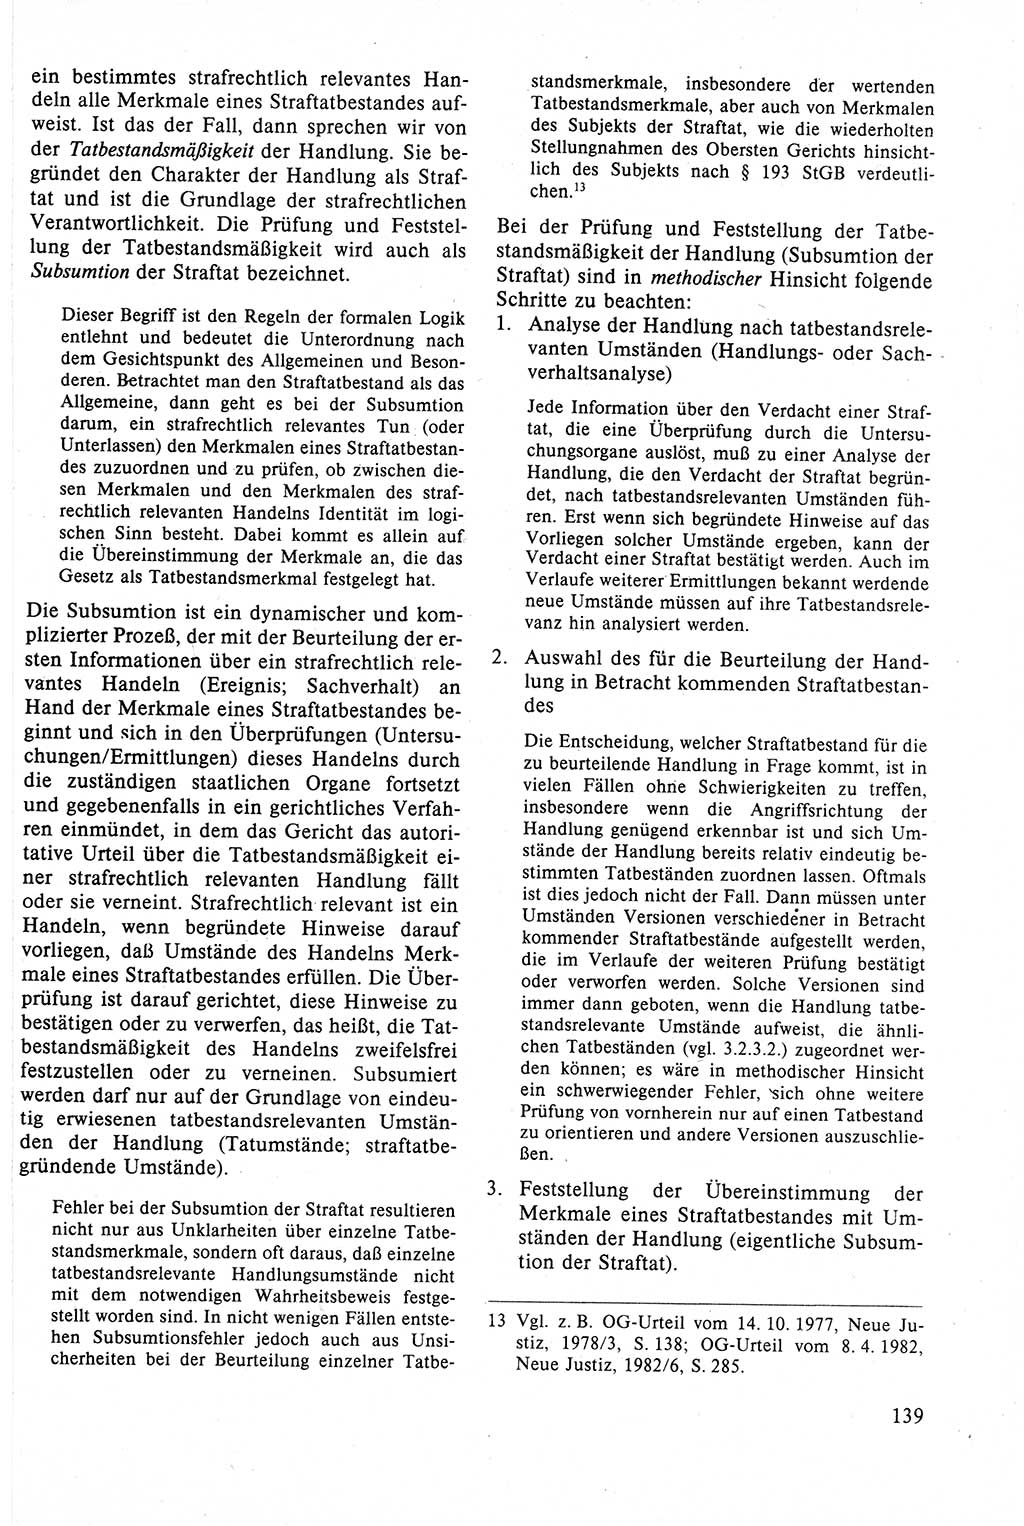 Strafrecht der DDR (Deutsche Demokratische Republik), Lehrbuch 1988, Seite 139 (Strafr. DDR Lb. 1988, S. 139)